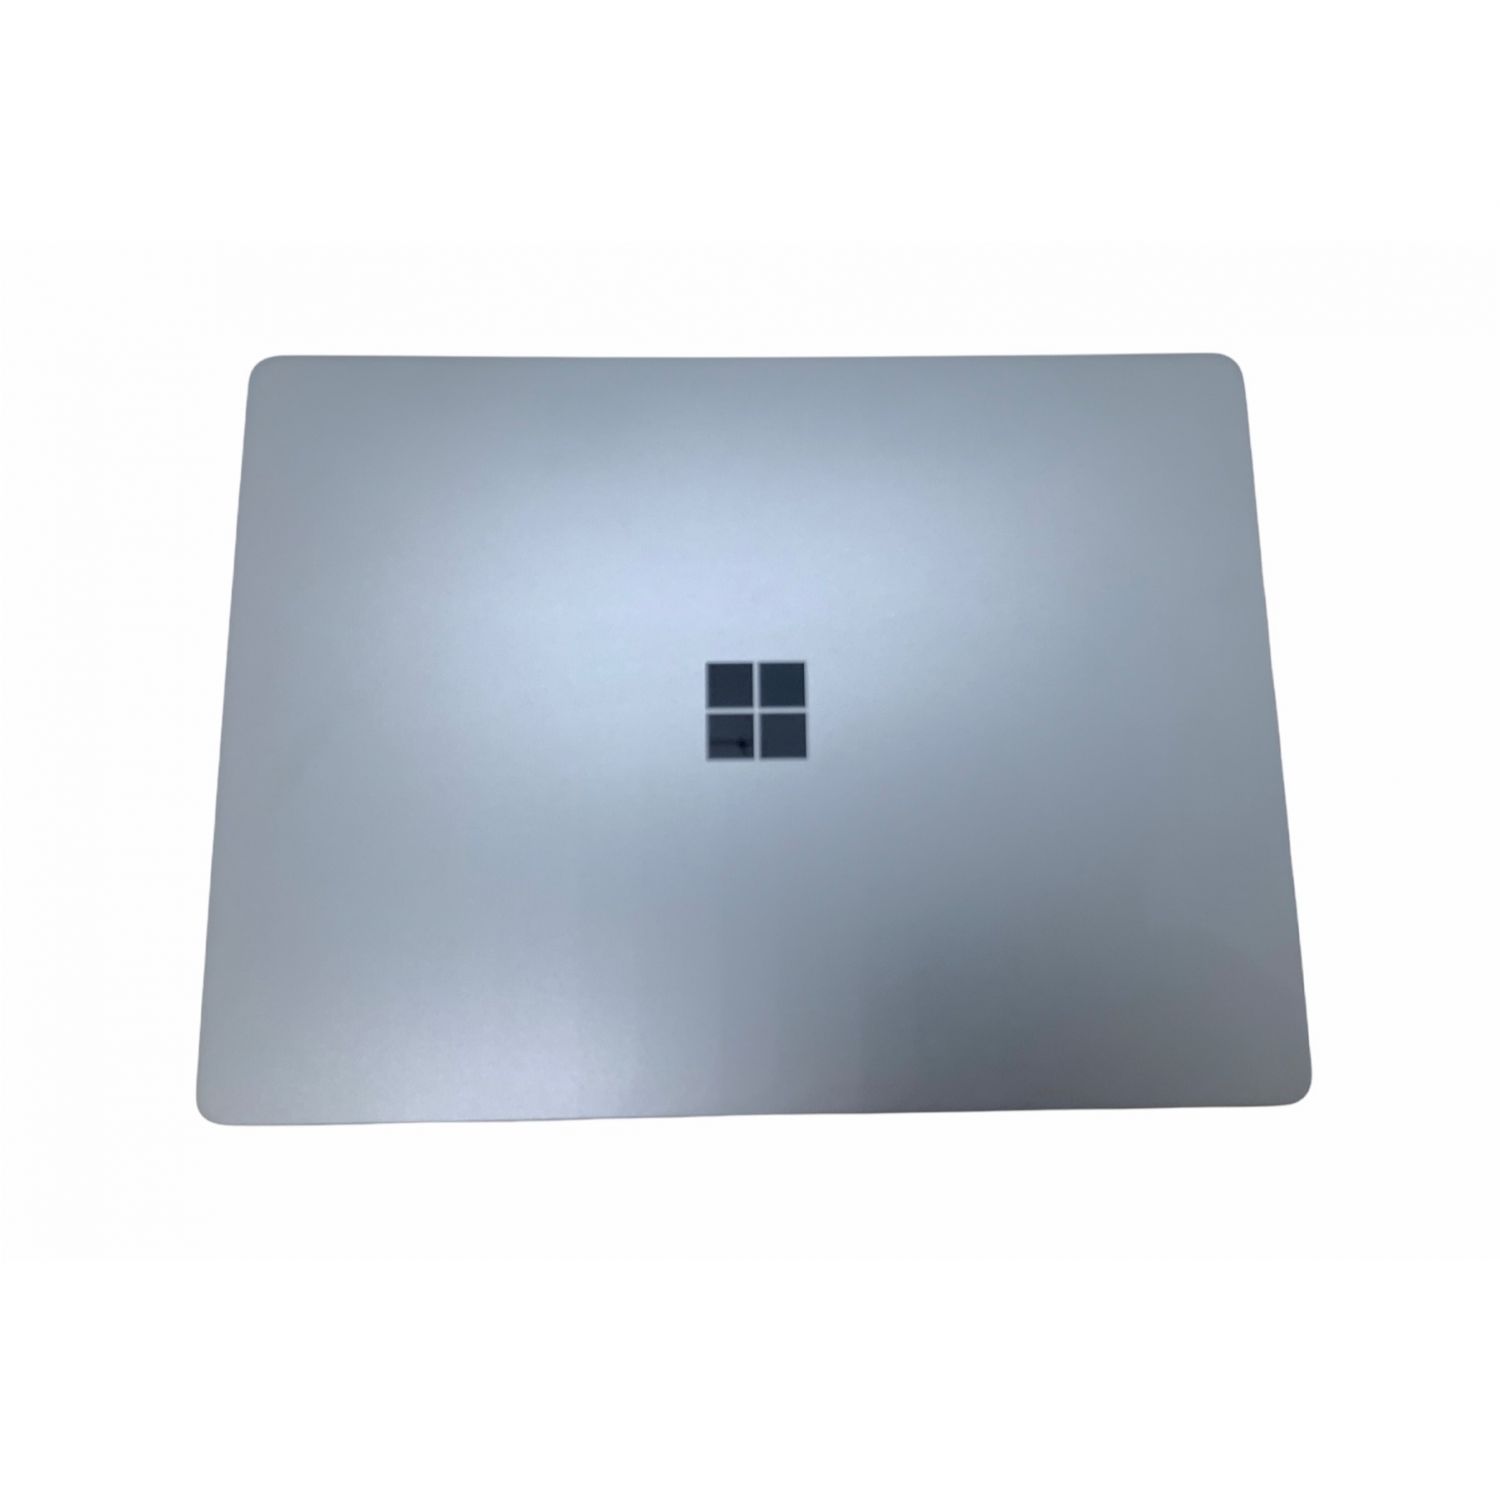 Microsoft (マイクロソフト) Surface Laptop Go 1943 12インチ Windows